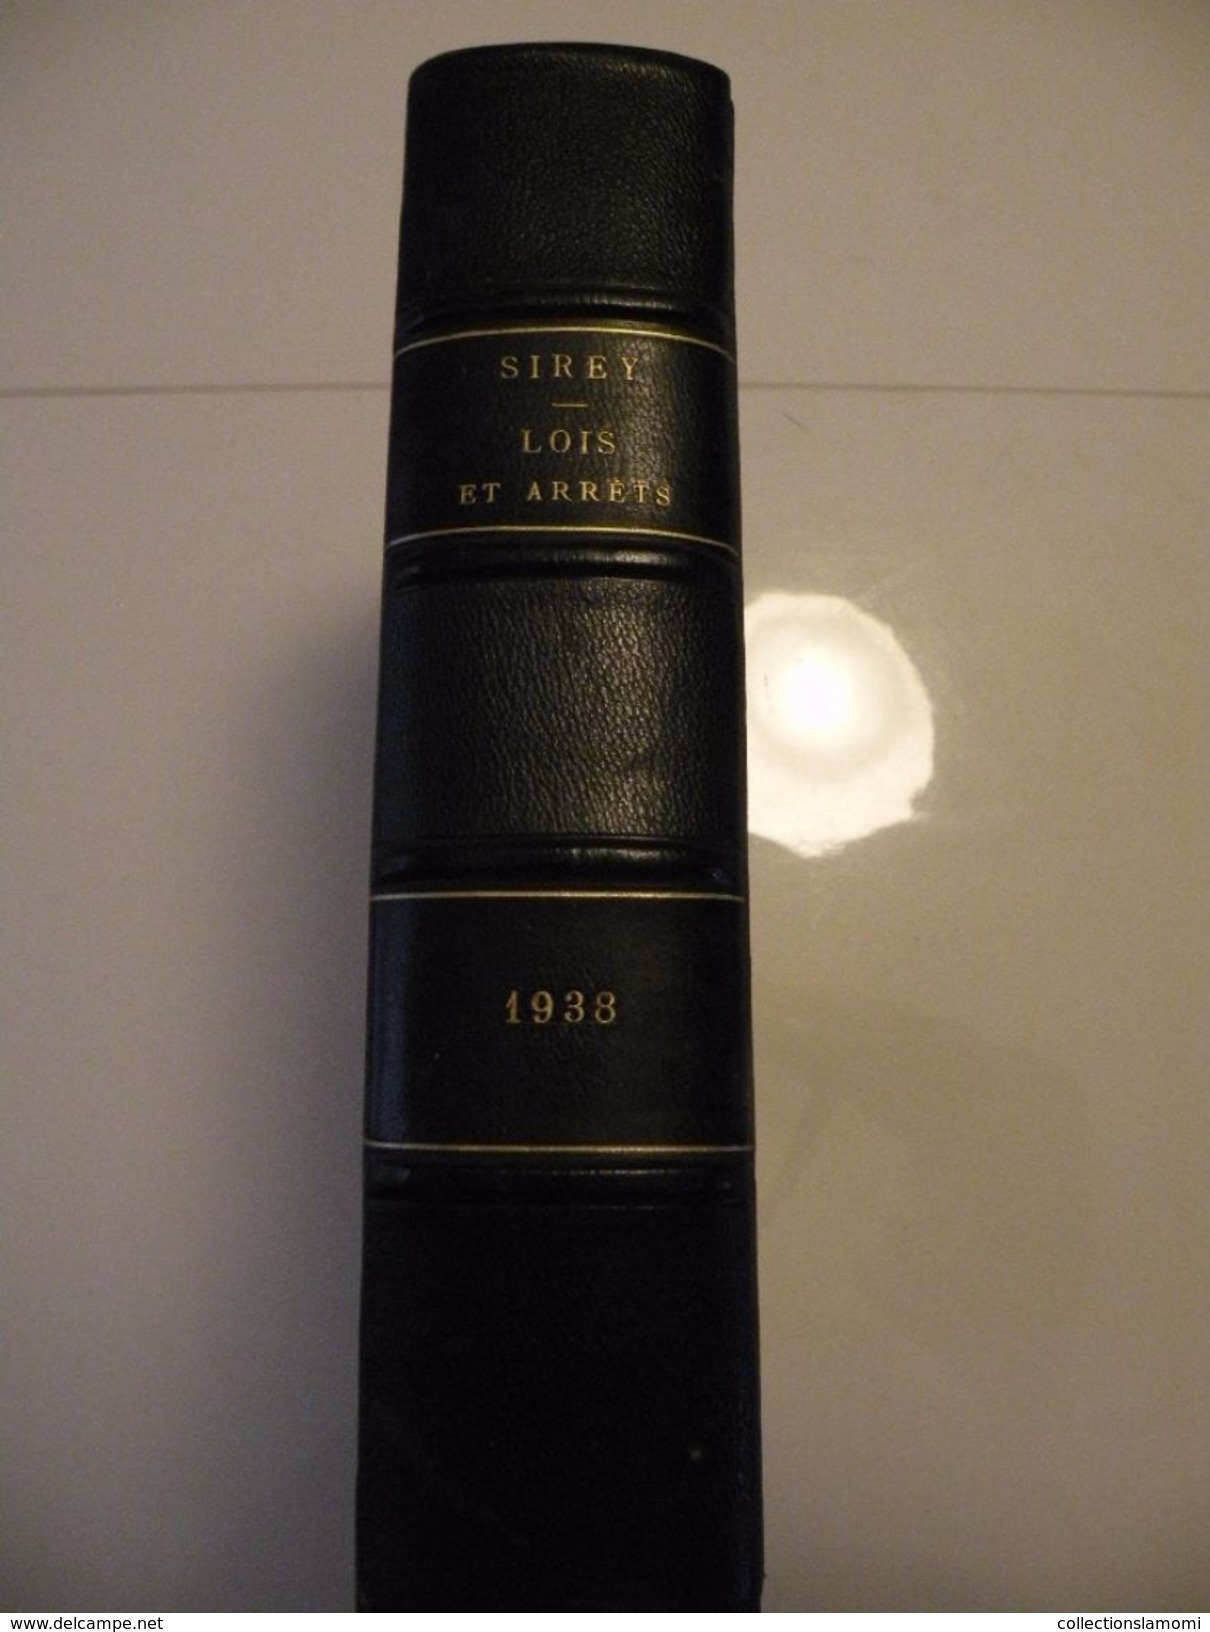 J.B. Sirey > Recueil des Lois et des arrêts fondé en 1938 > Journal du Palais Pandectes Françaises Périodiques